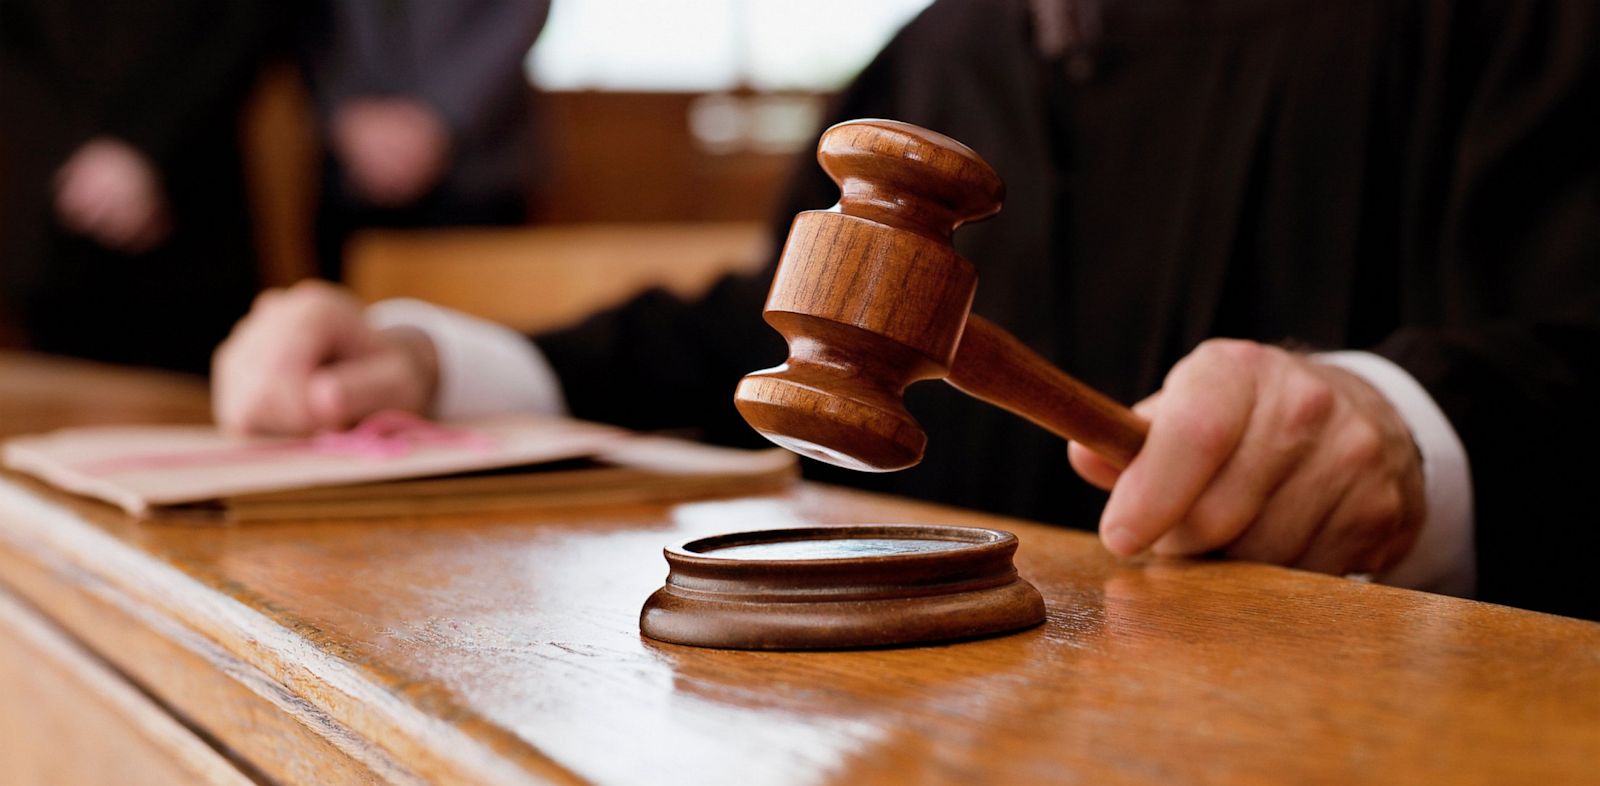 Ένοχος κρίθηκε ο Μάριος Χρυσάνθου από τη Λευκωσία για υπόθεση οικειοποίησης χρημάτων από εταιρεία - Στις 24/10 η αγόρευση για μετριασμό ποινής